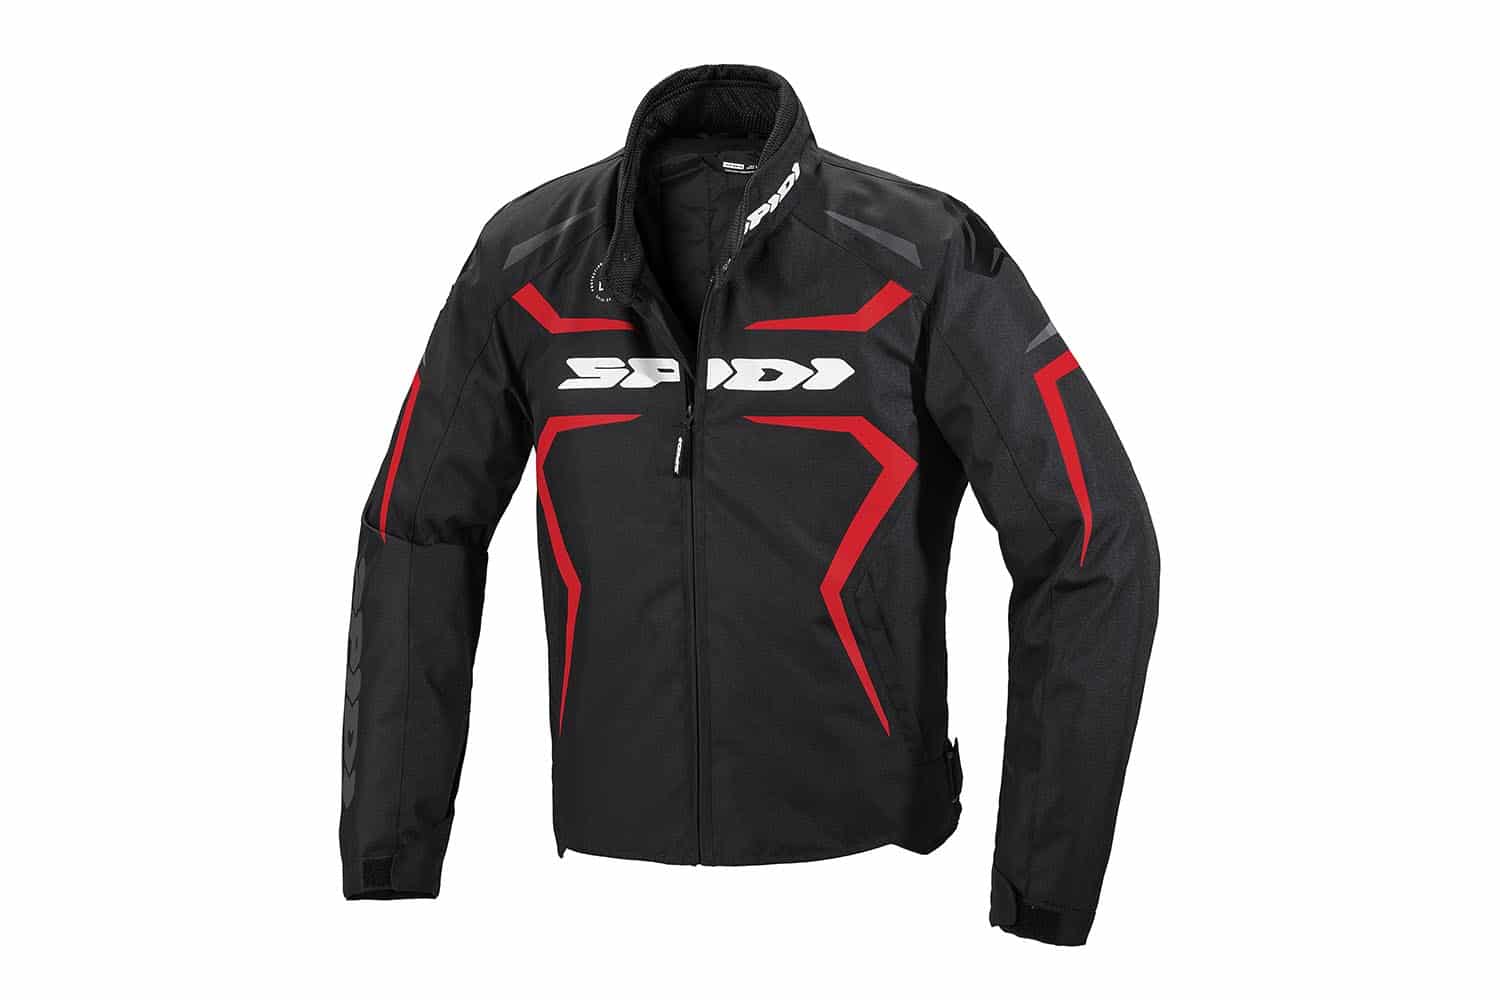 La chaqueta SPIDI Sportmaster refleja el estilo deportivo